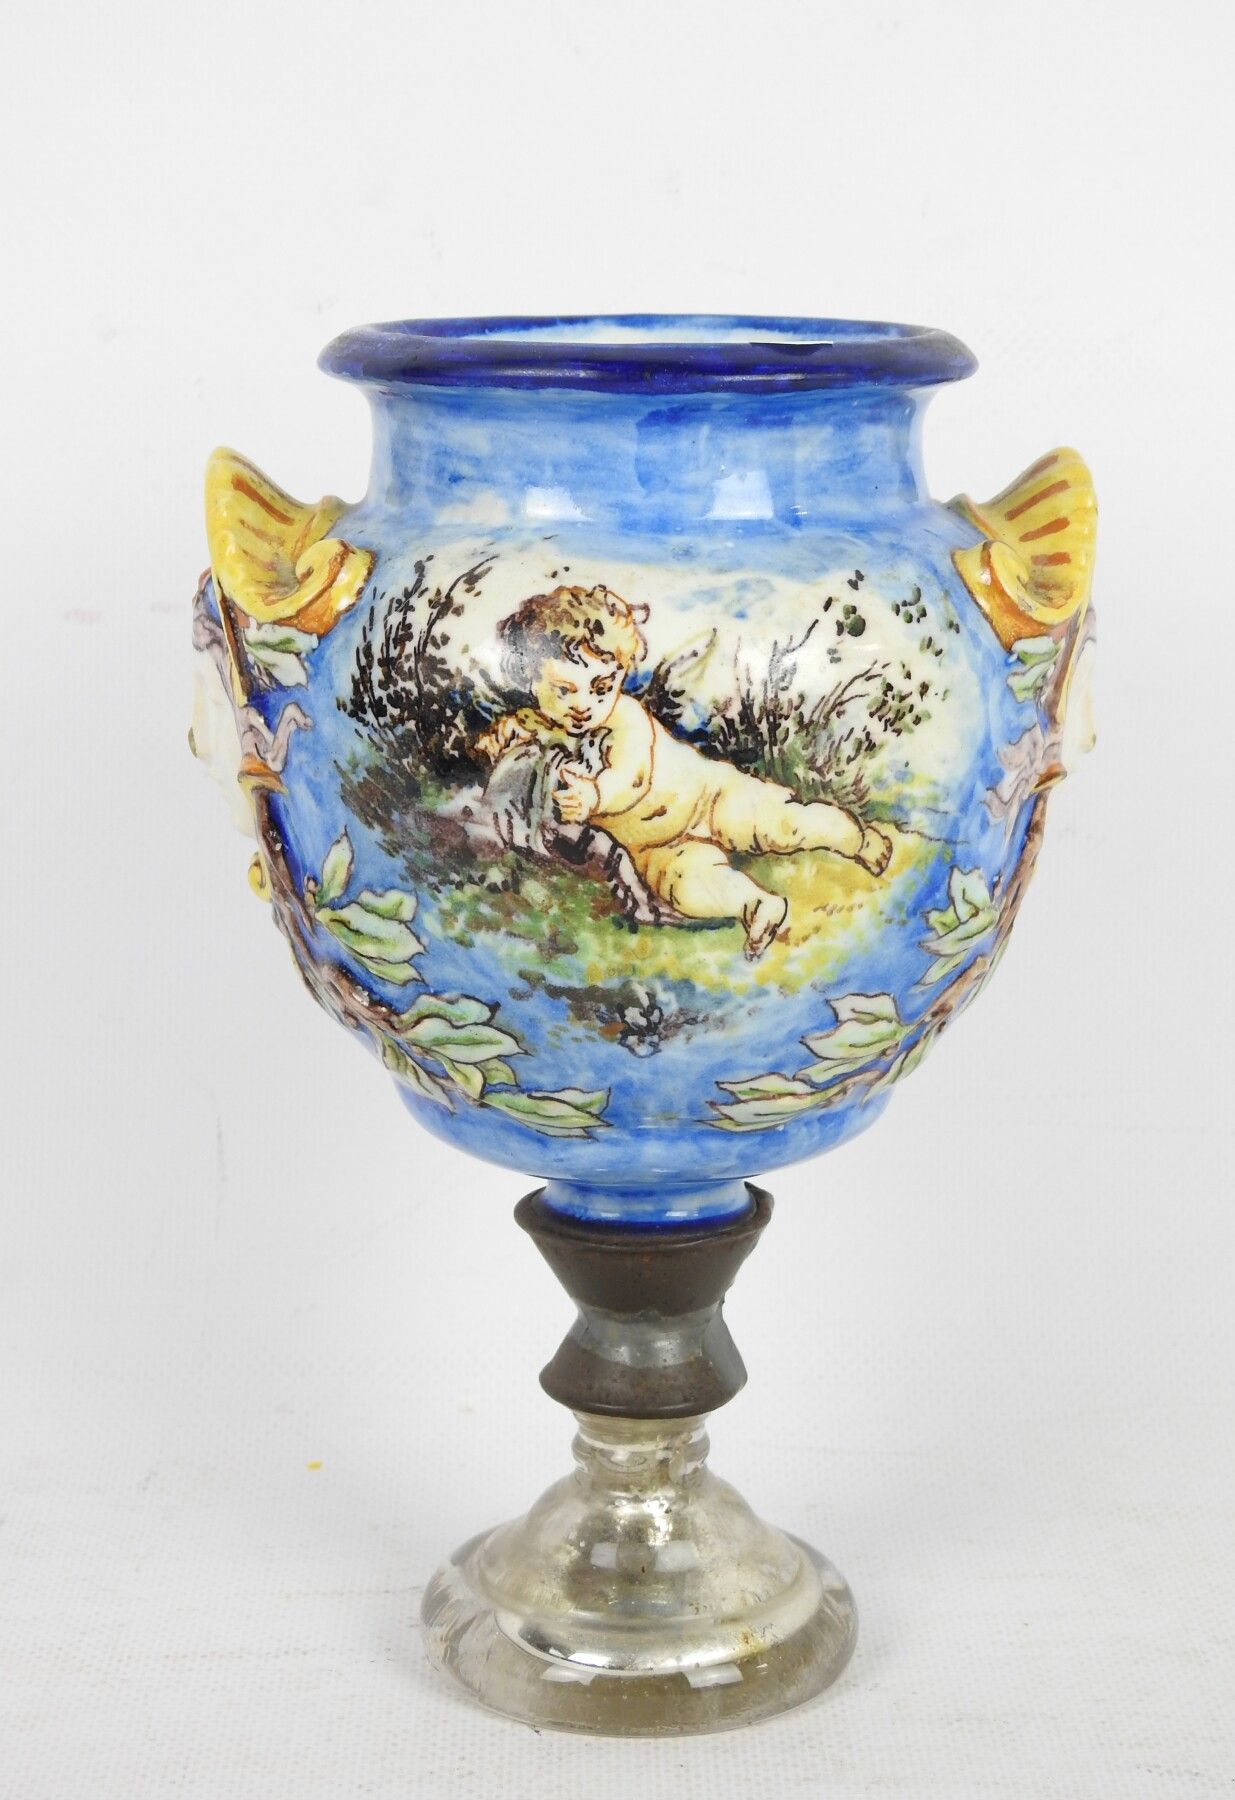 Null 多色陶器小花瓶，装饰有小天使和鸽子，把手形成面具，安装在一个玻璃和金属底座上。高度：20厘米。